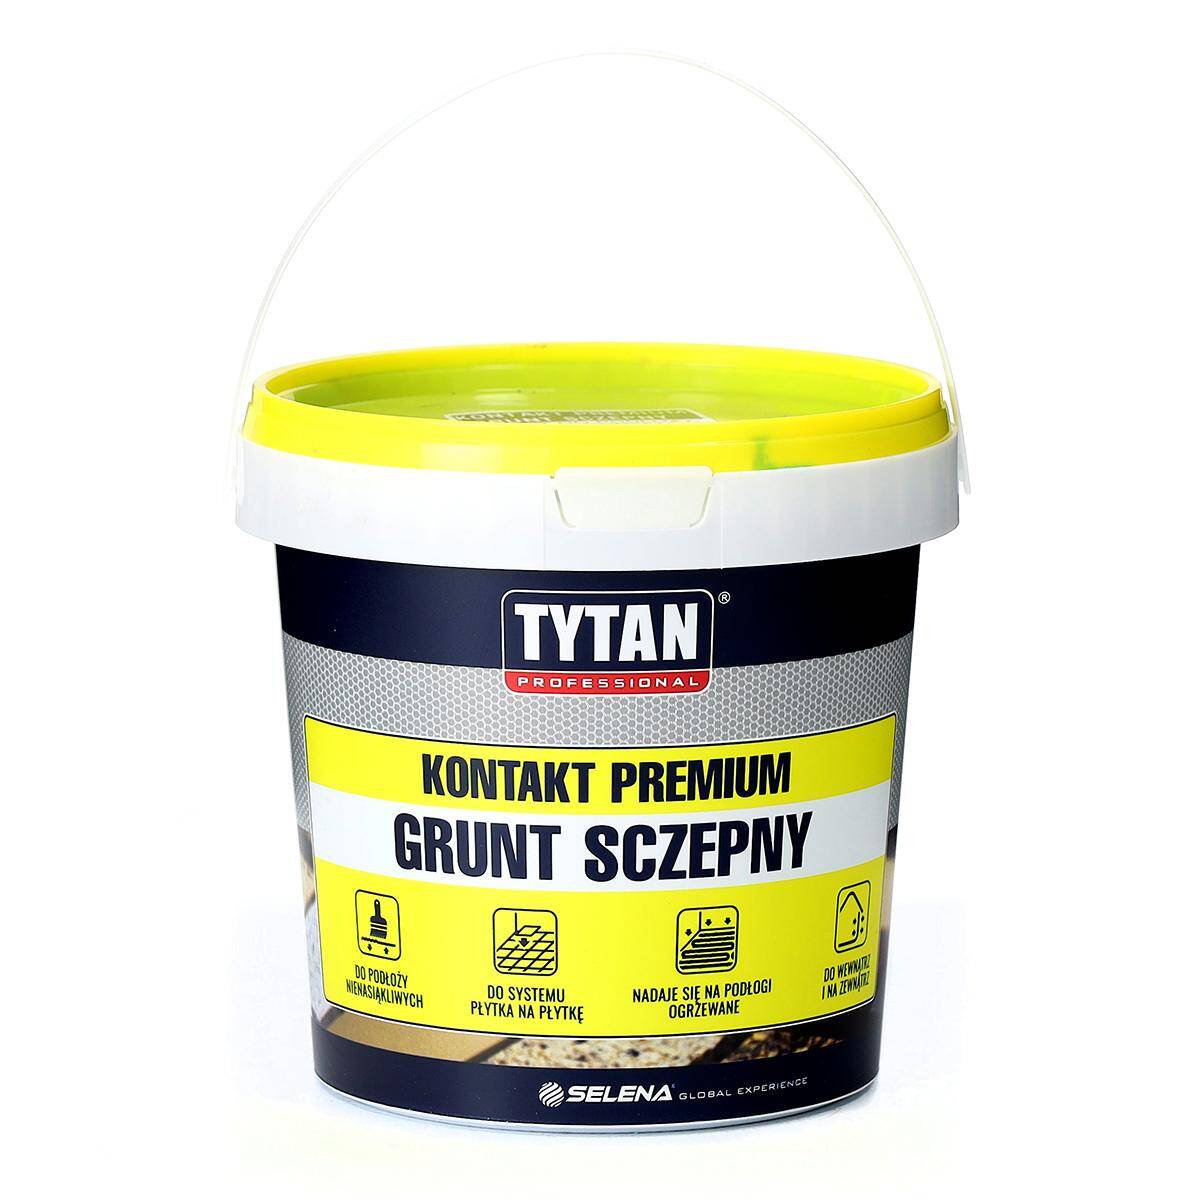 Grunt szczepny kontakt premium 1,5 kg TYTAN Professional